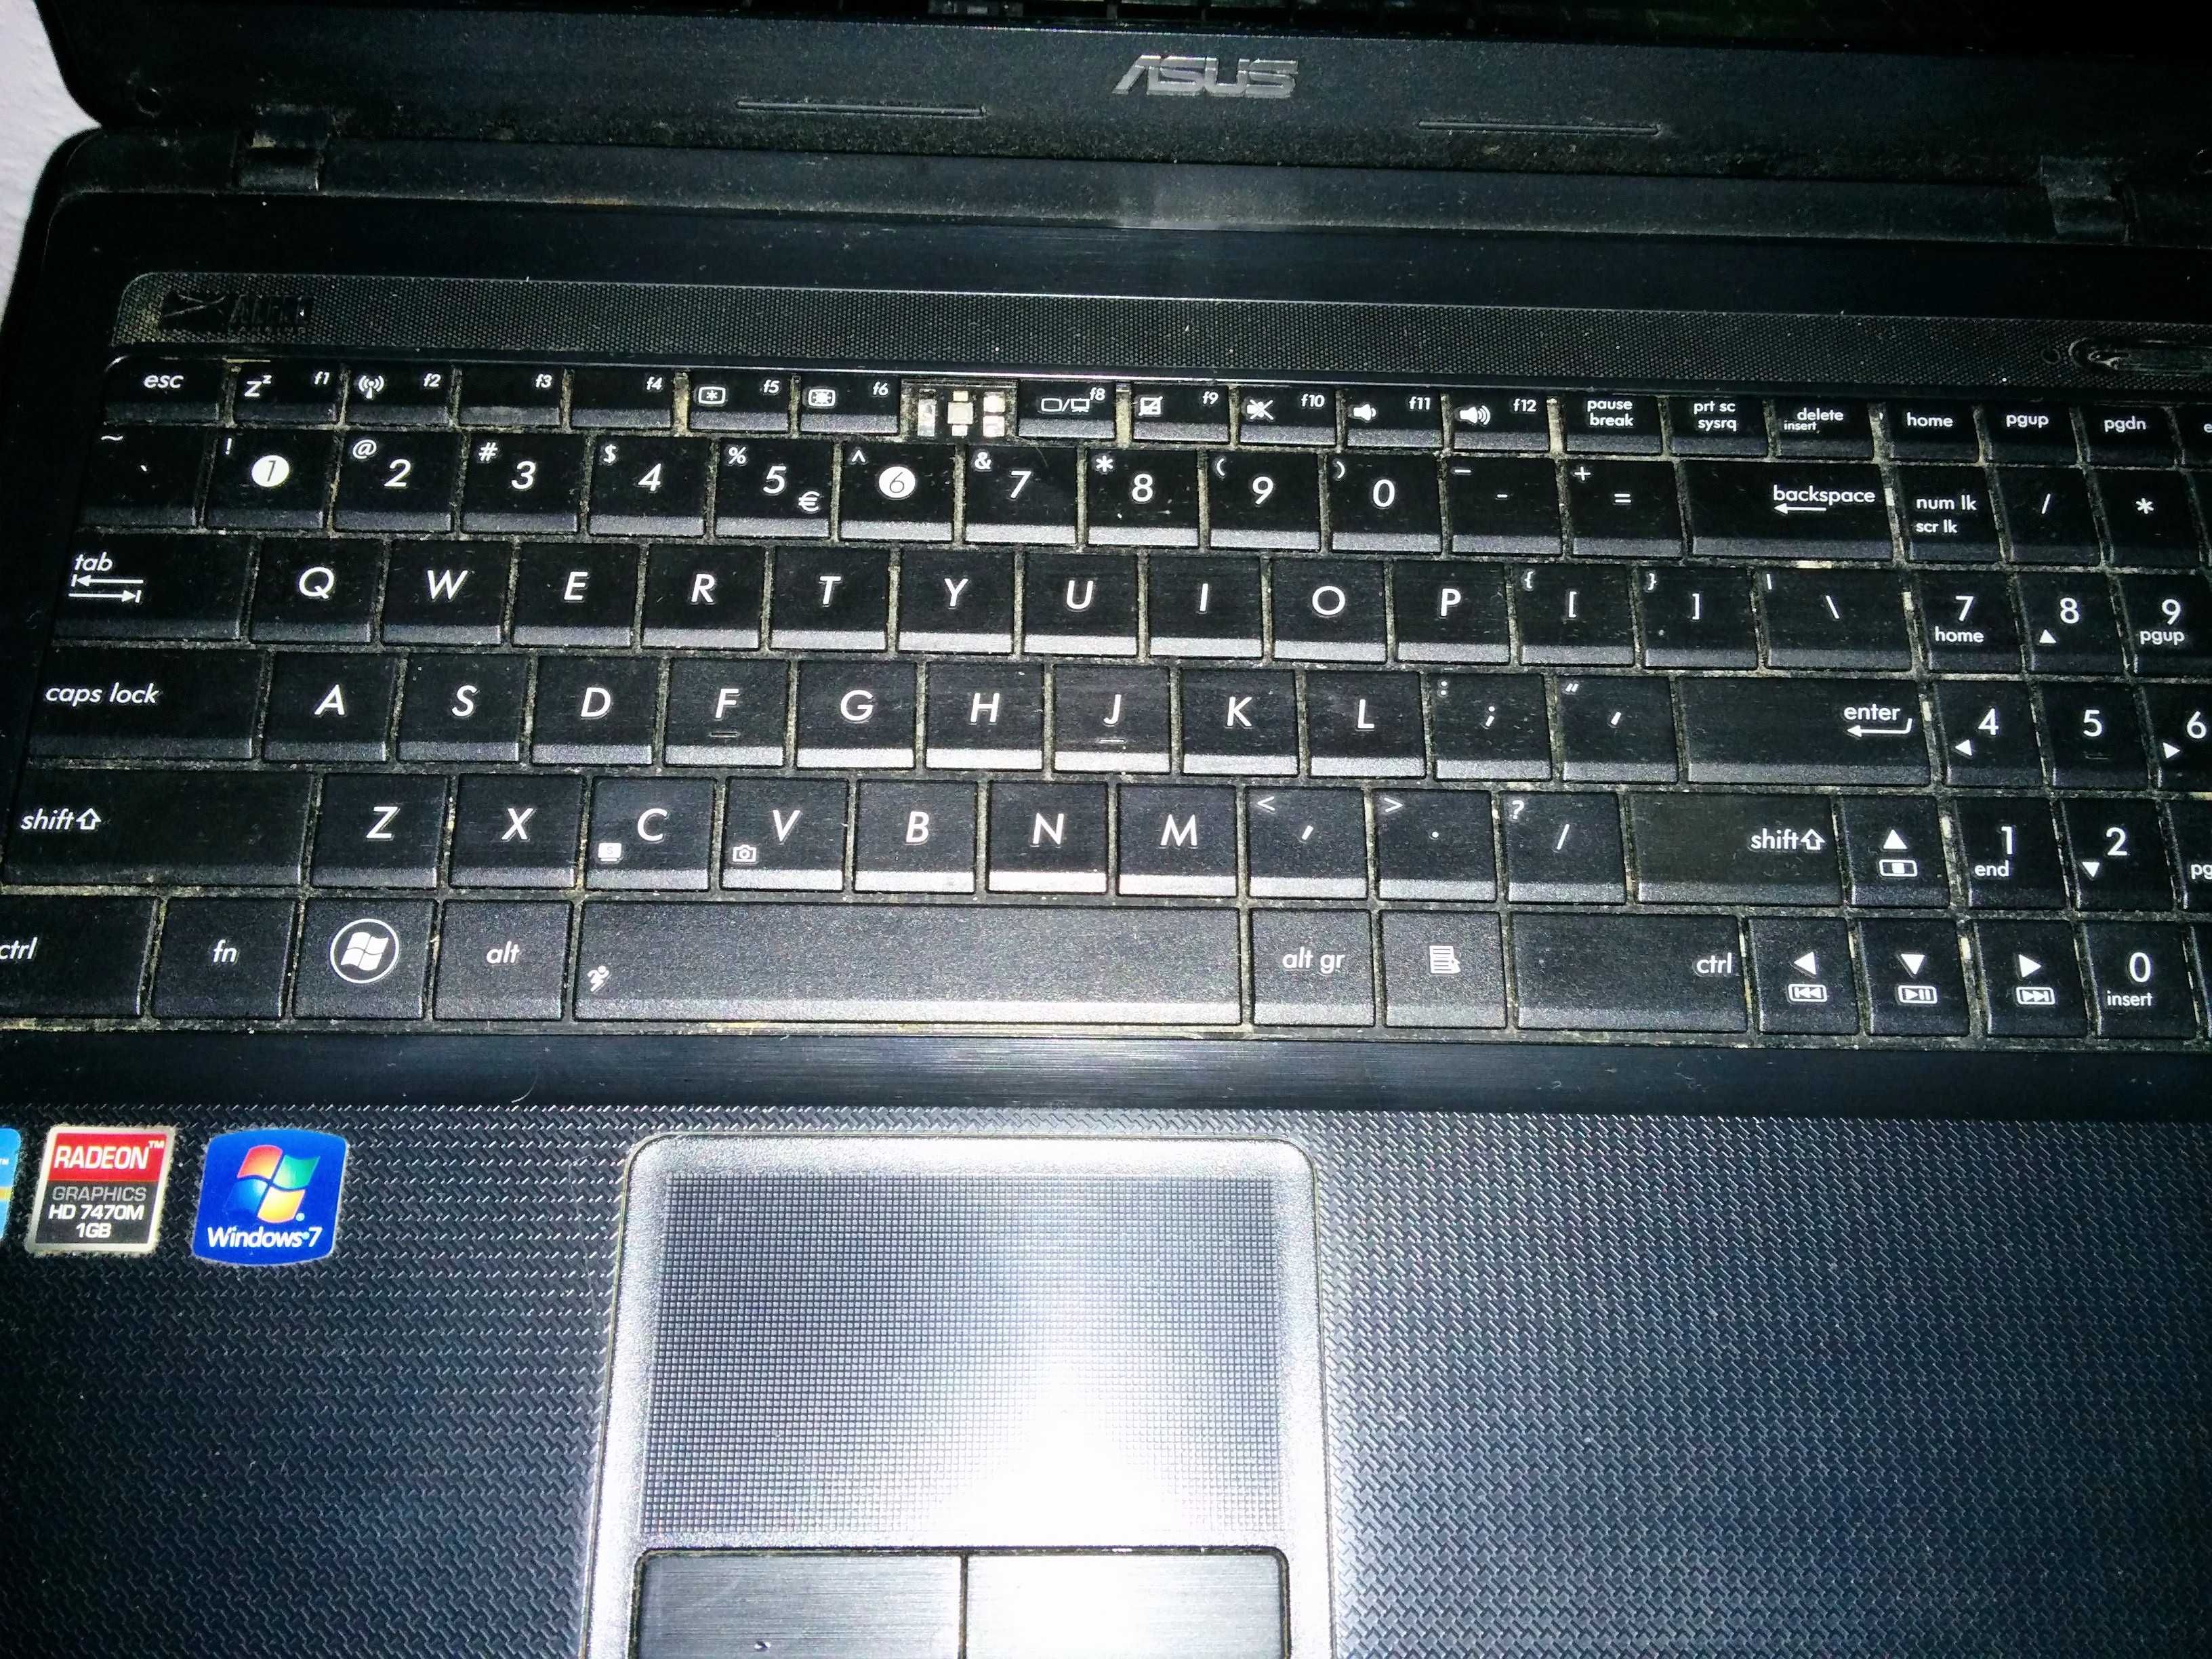 Laptop Asus x54H - brak HDD oraz zasilacza - jako uszkodzony